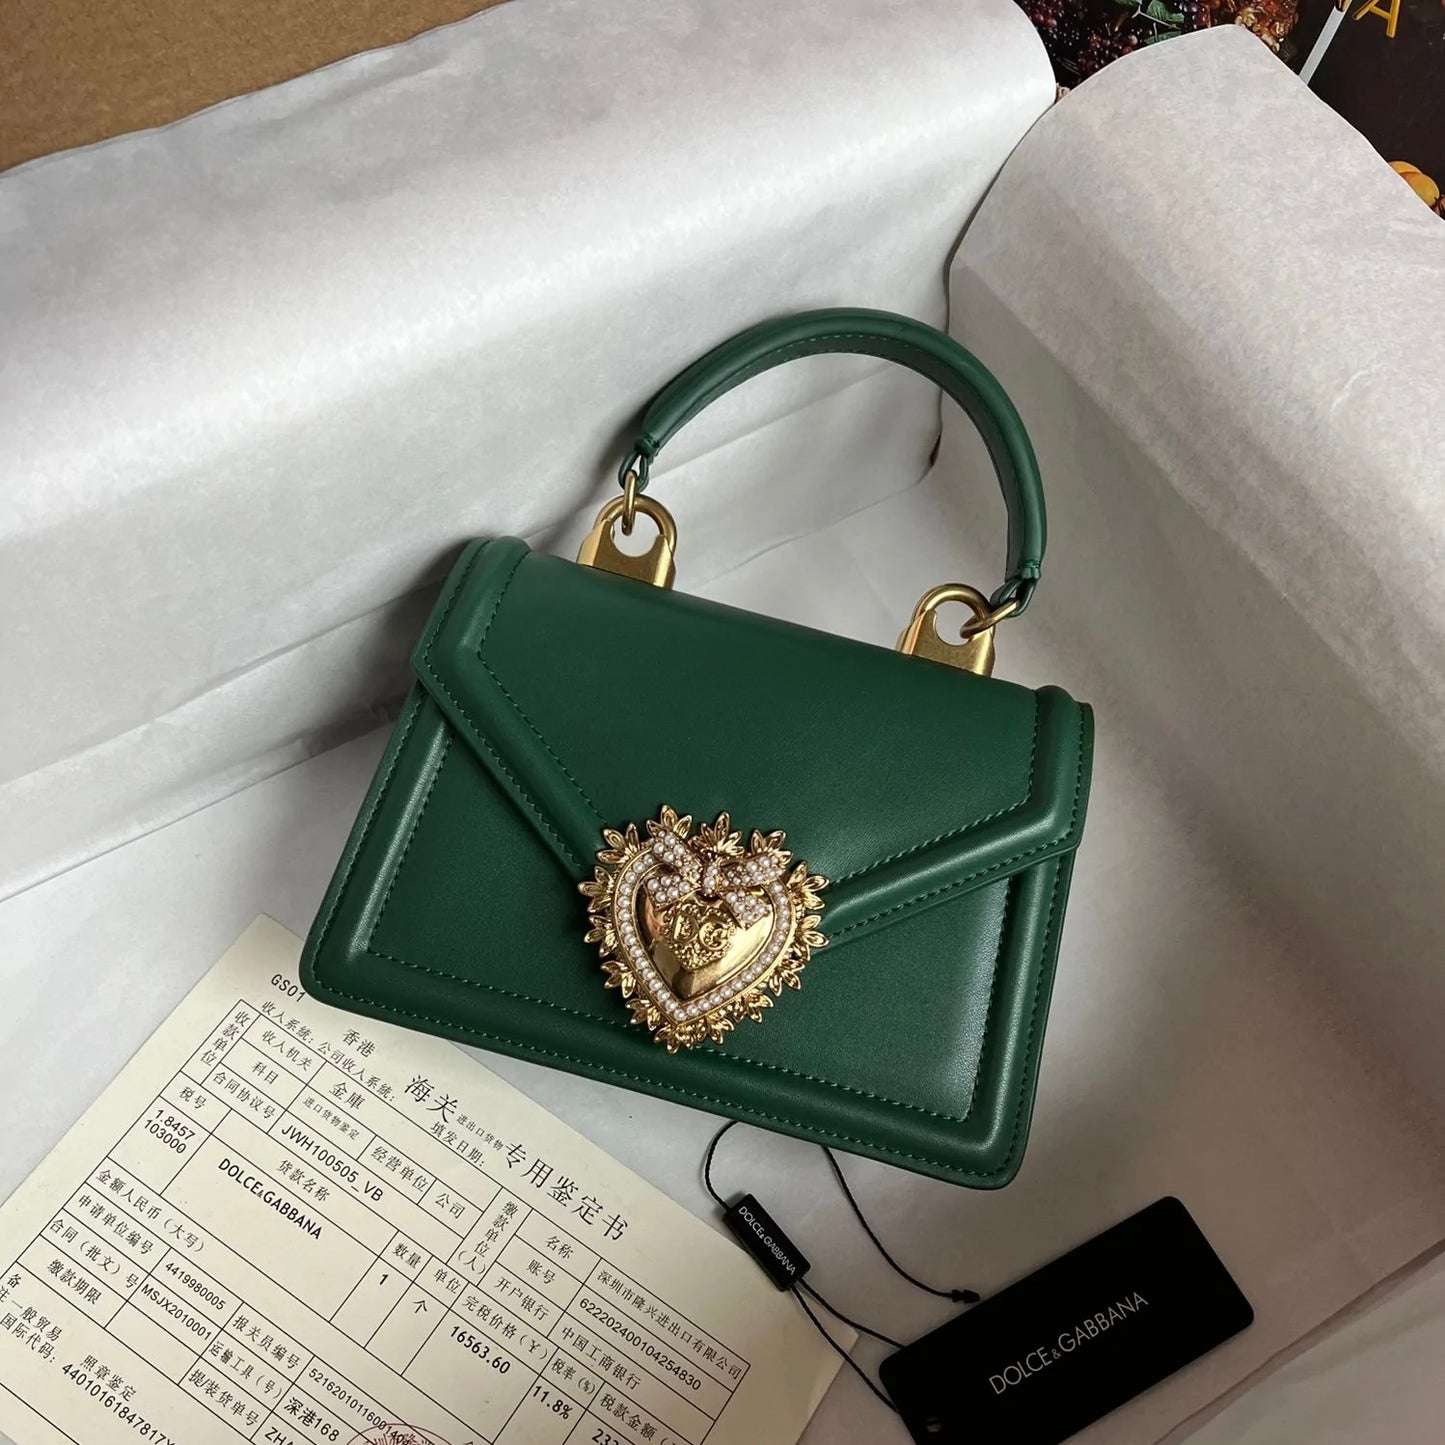 Dolce & Gabbana Devotion Small shoulder Bag